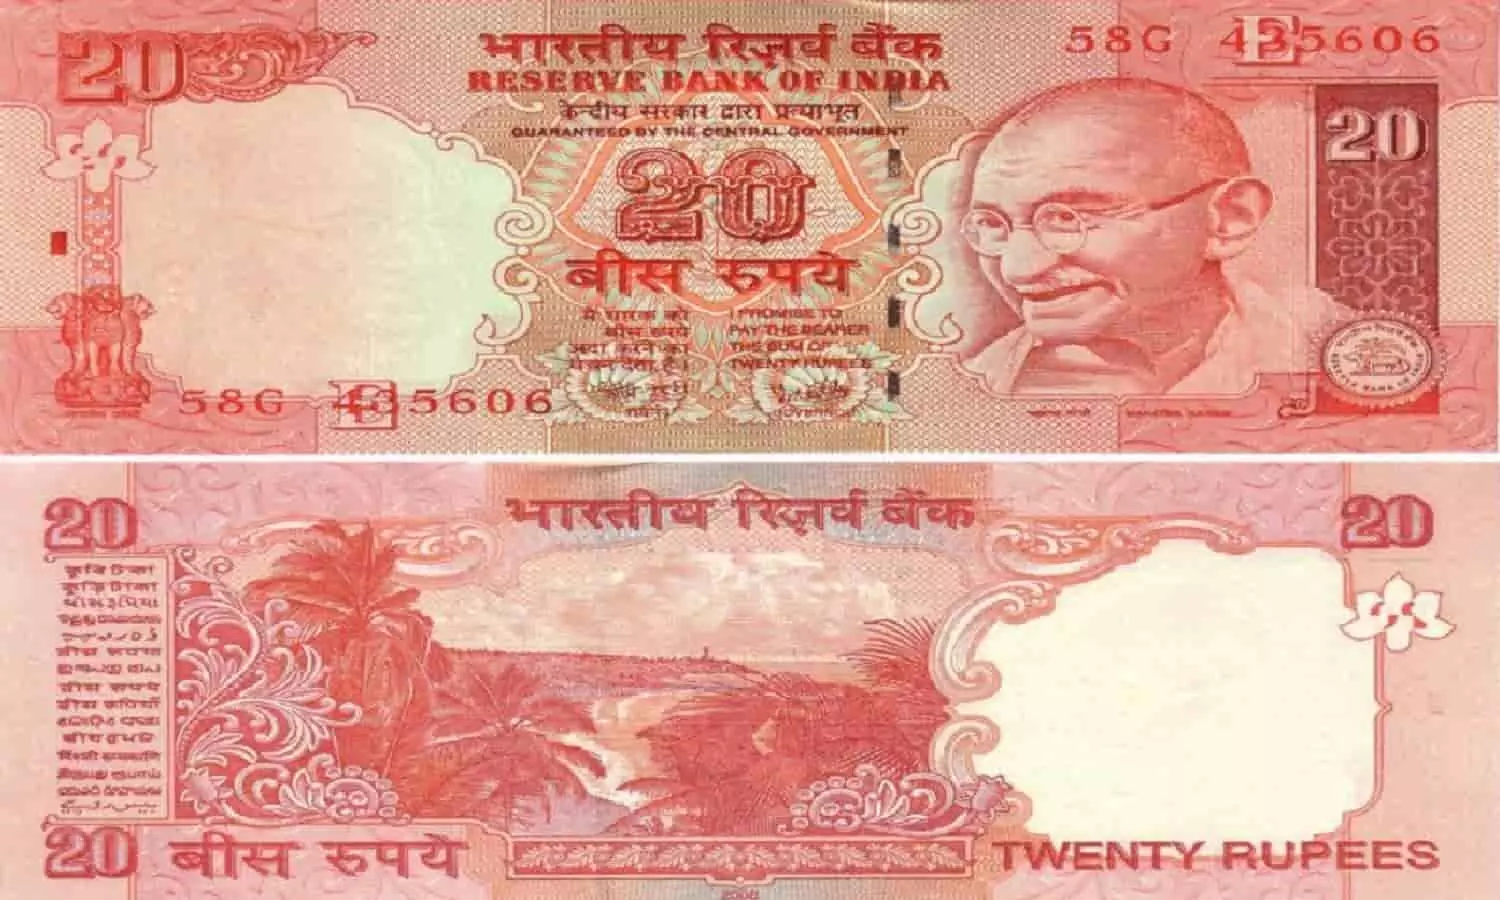 20 रुपये के नोट का रंग गुलाबी क्यों होता है? वजह जान खुल जाएगी बुद्धि